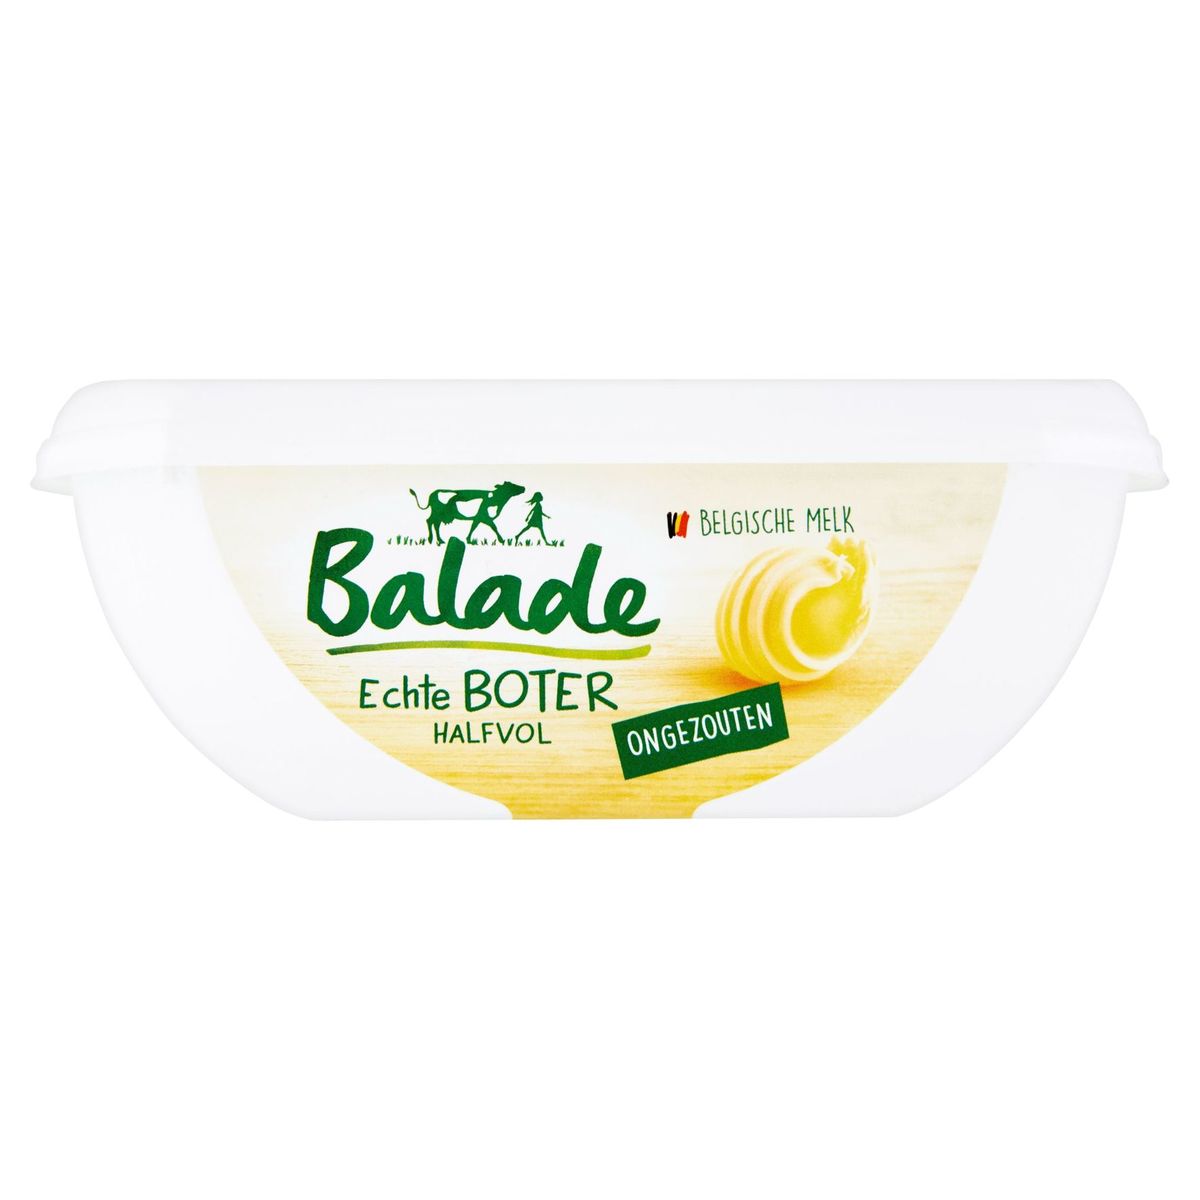 Balade Le Beurre Demi-Écrémé Doux 250 g